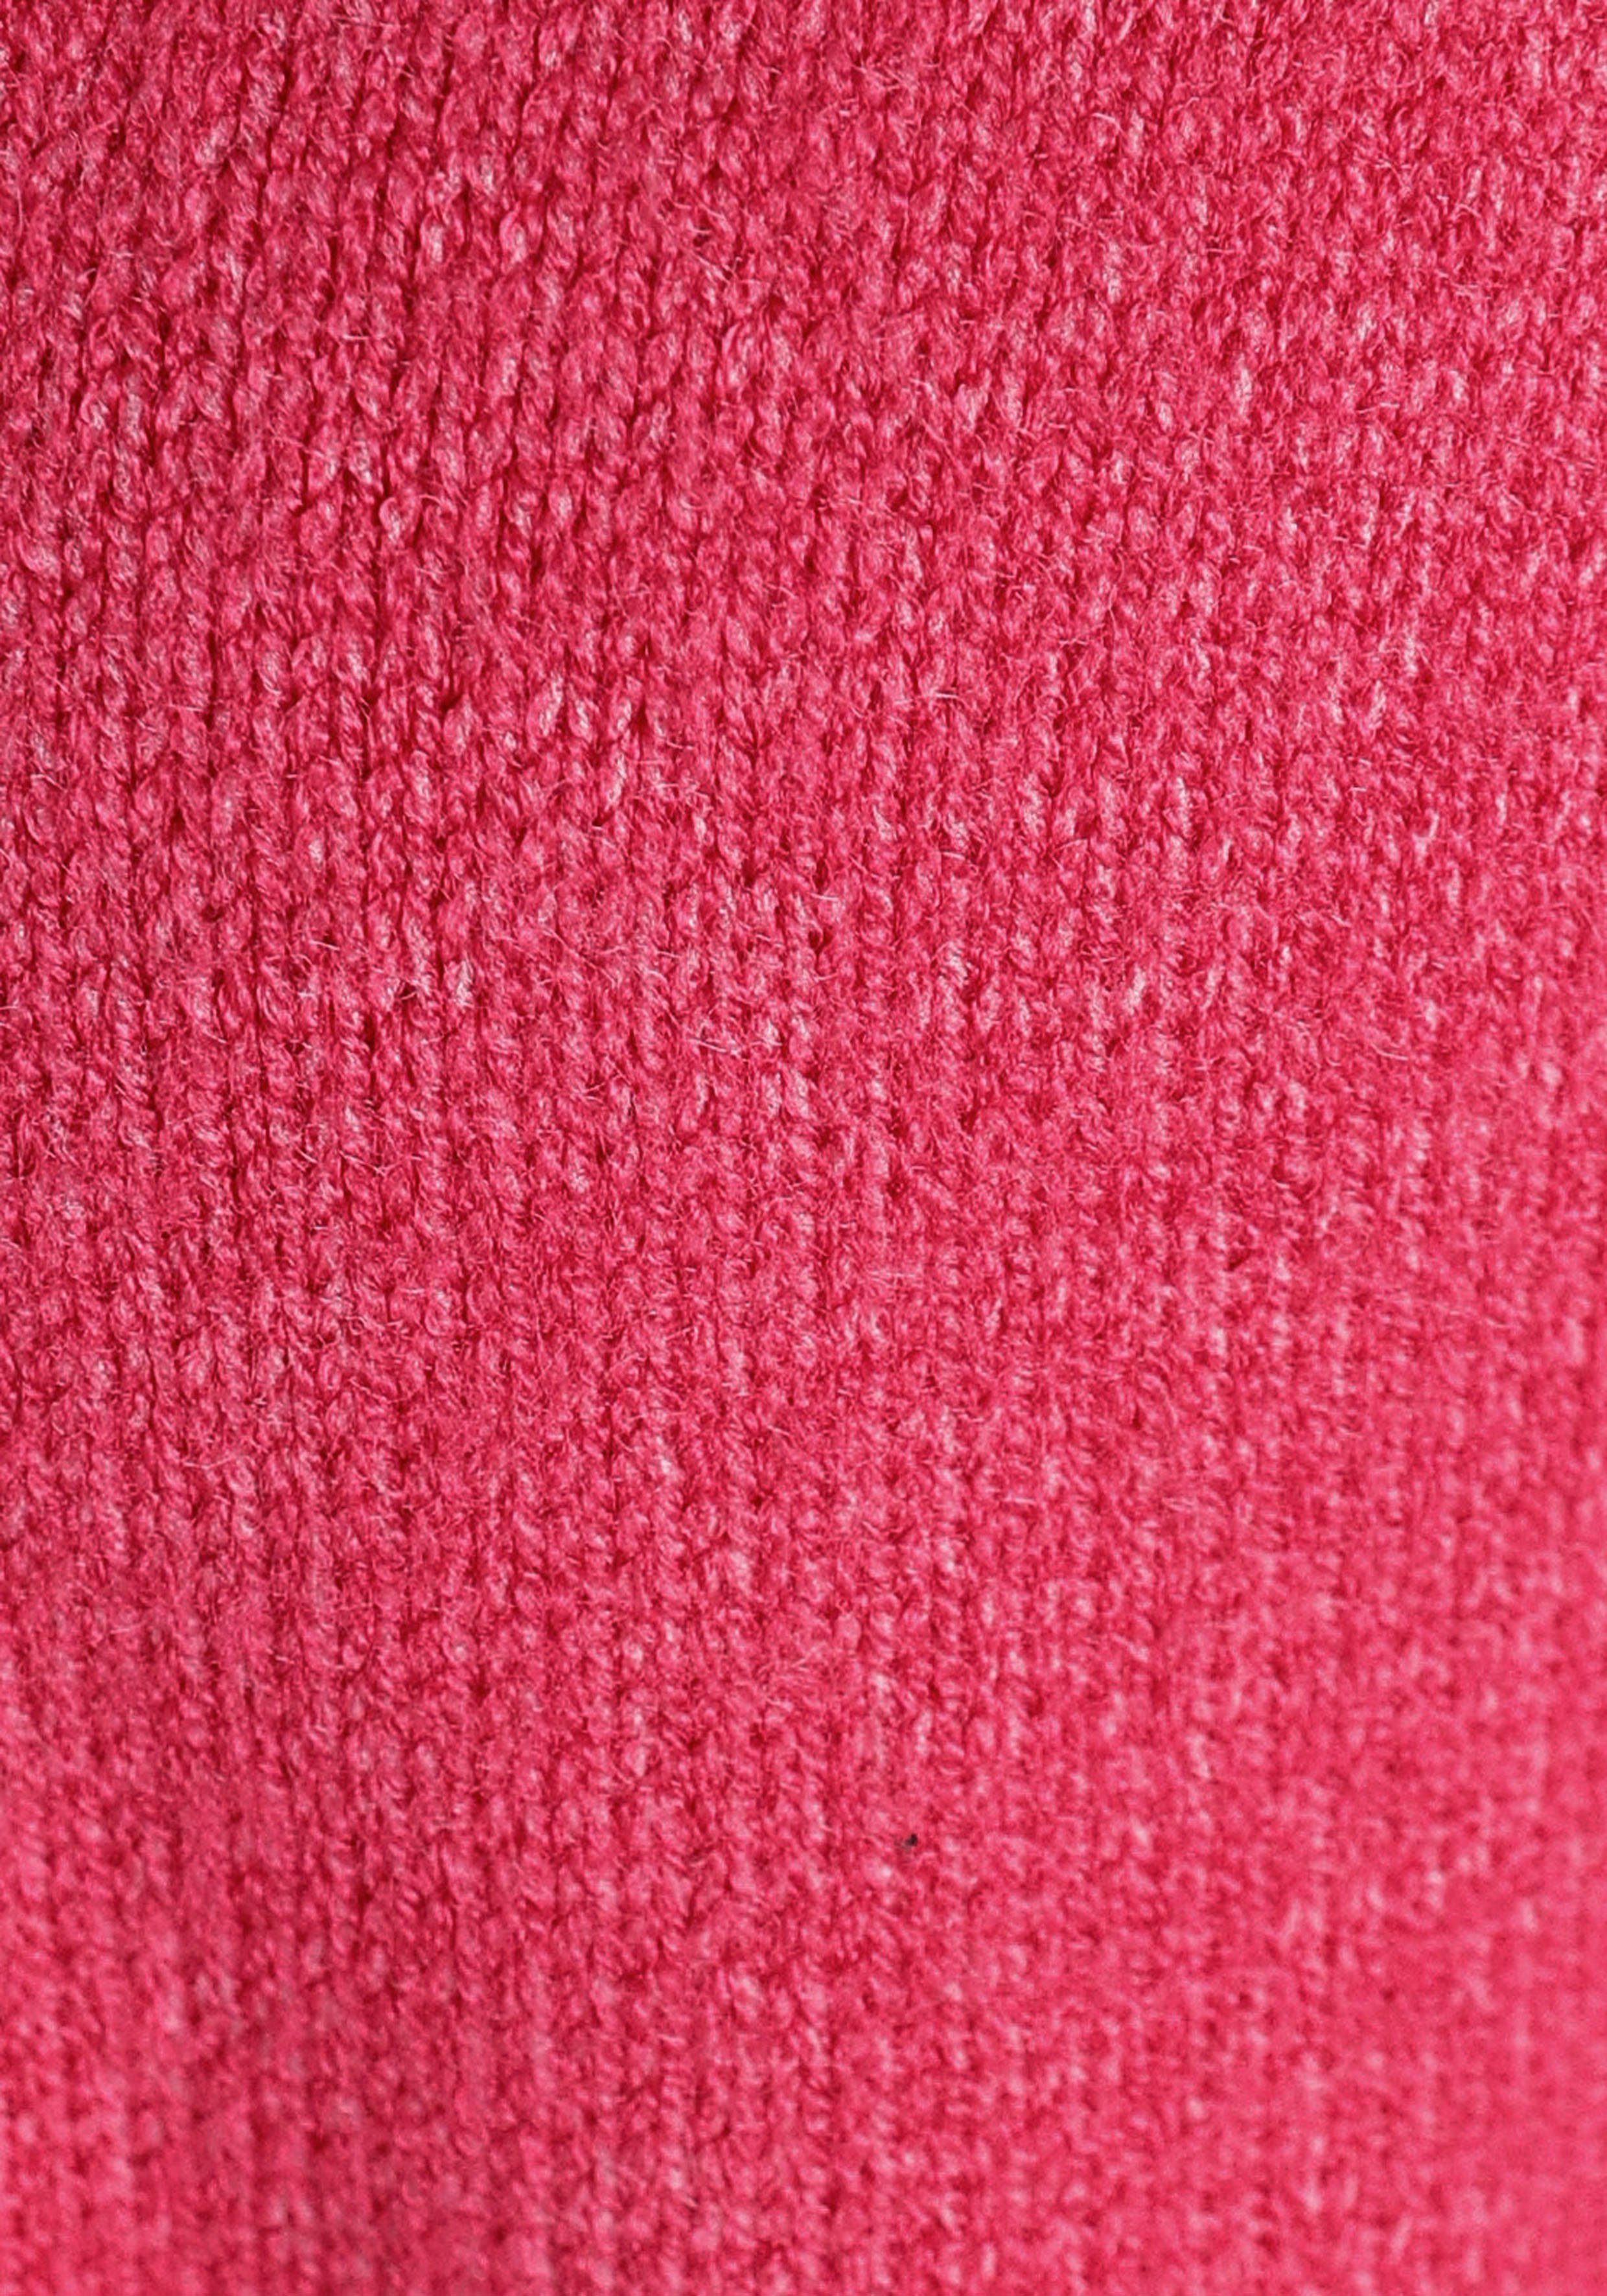 aus Longstrickjacke (aus Laura nachhaltigem Scott Material) pink-melange Strickqualität kuscheliger